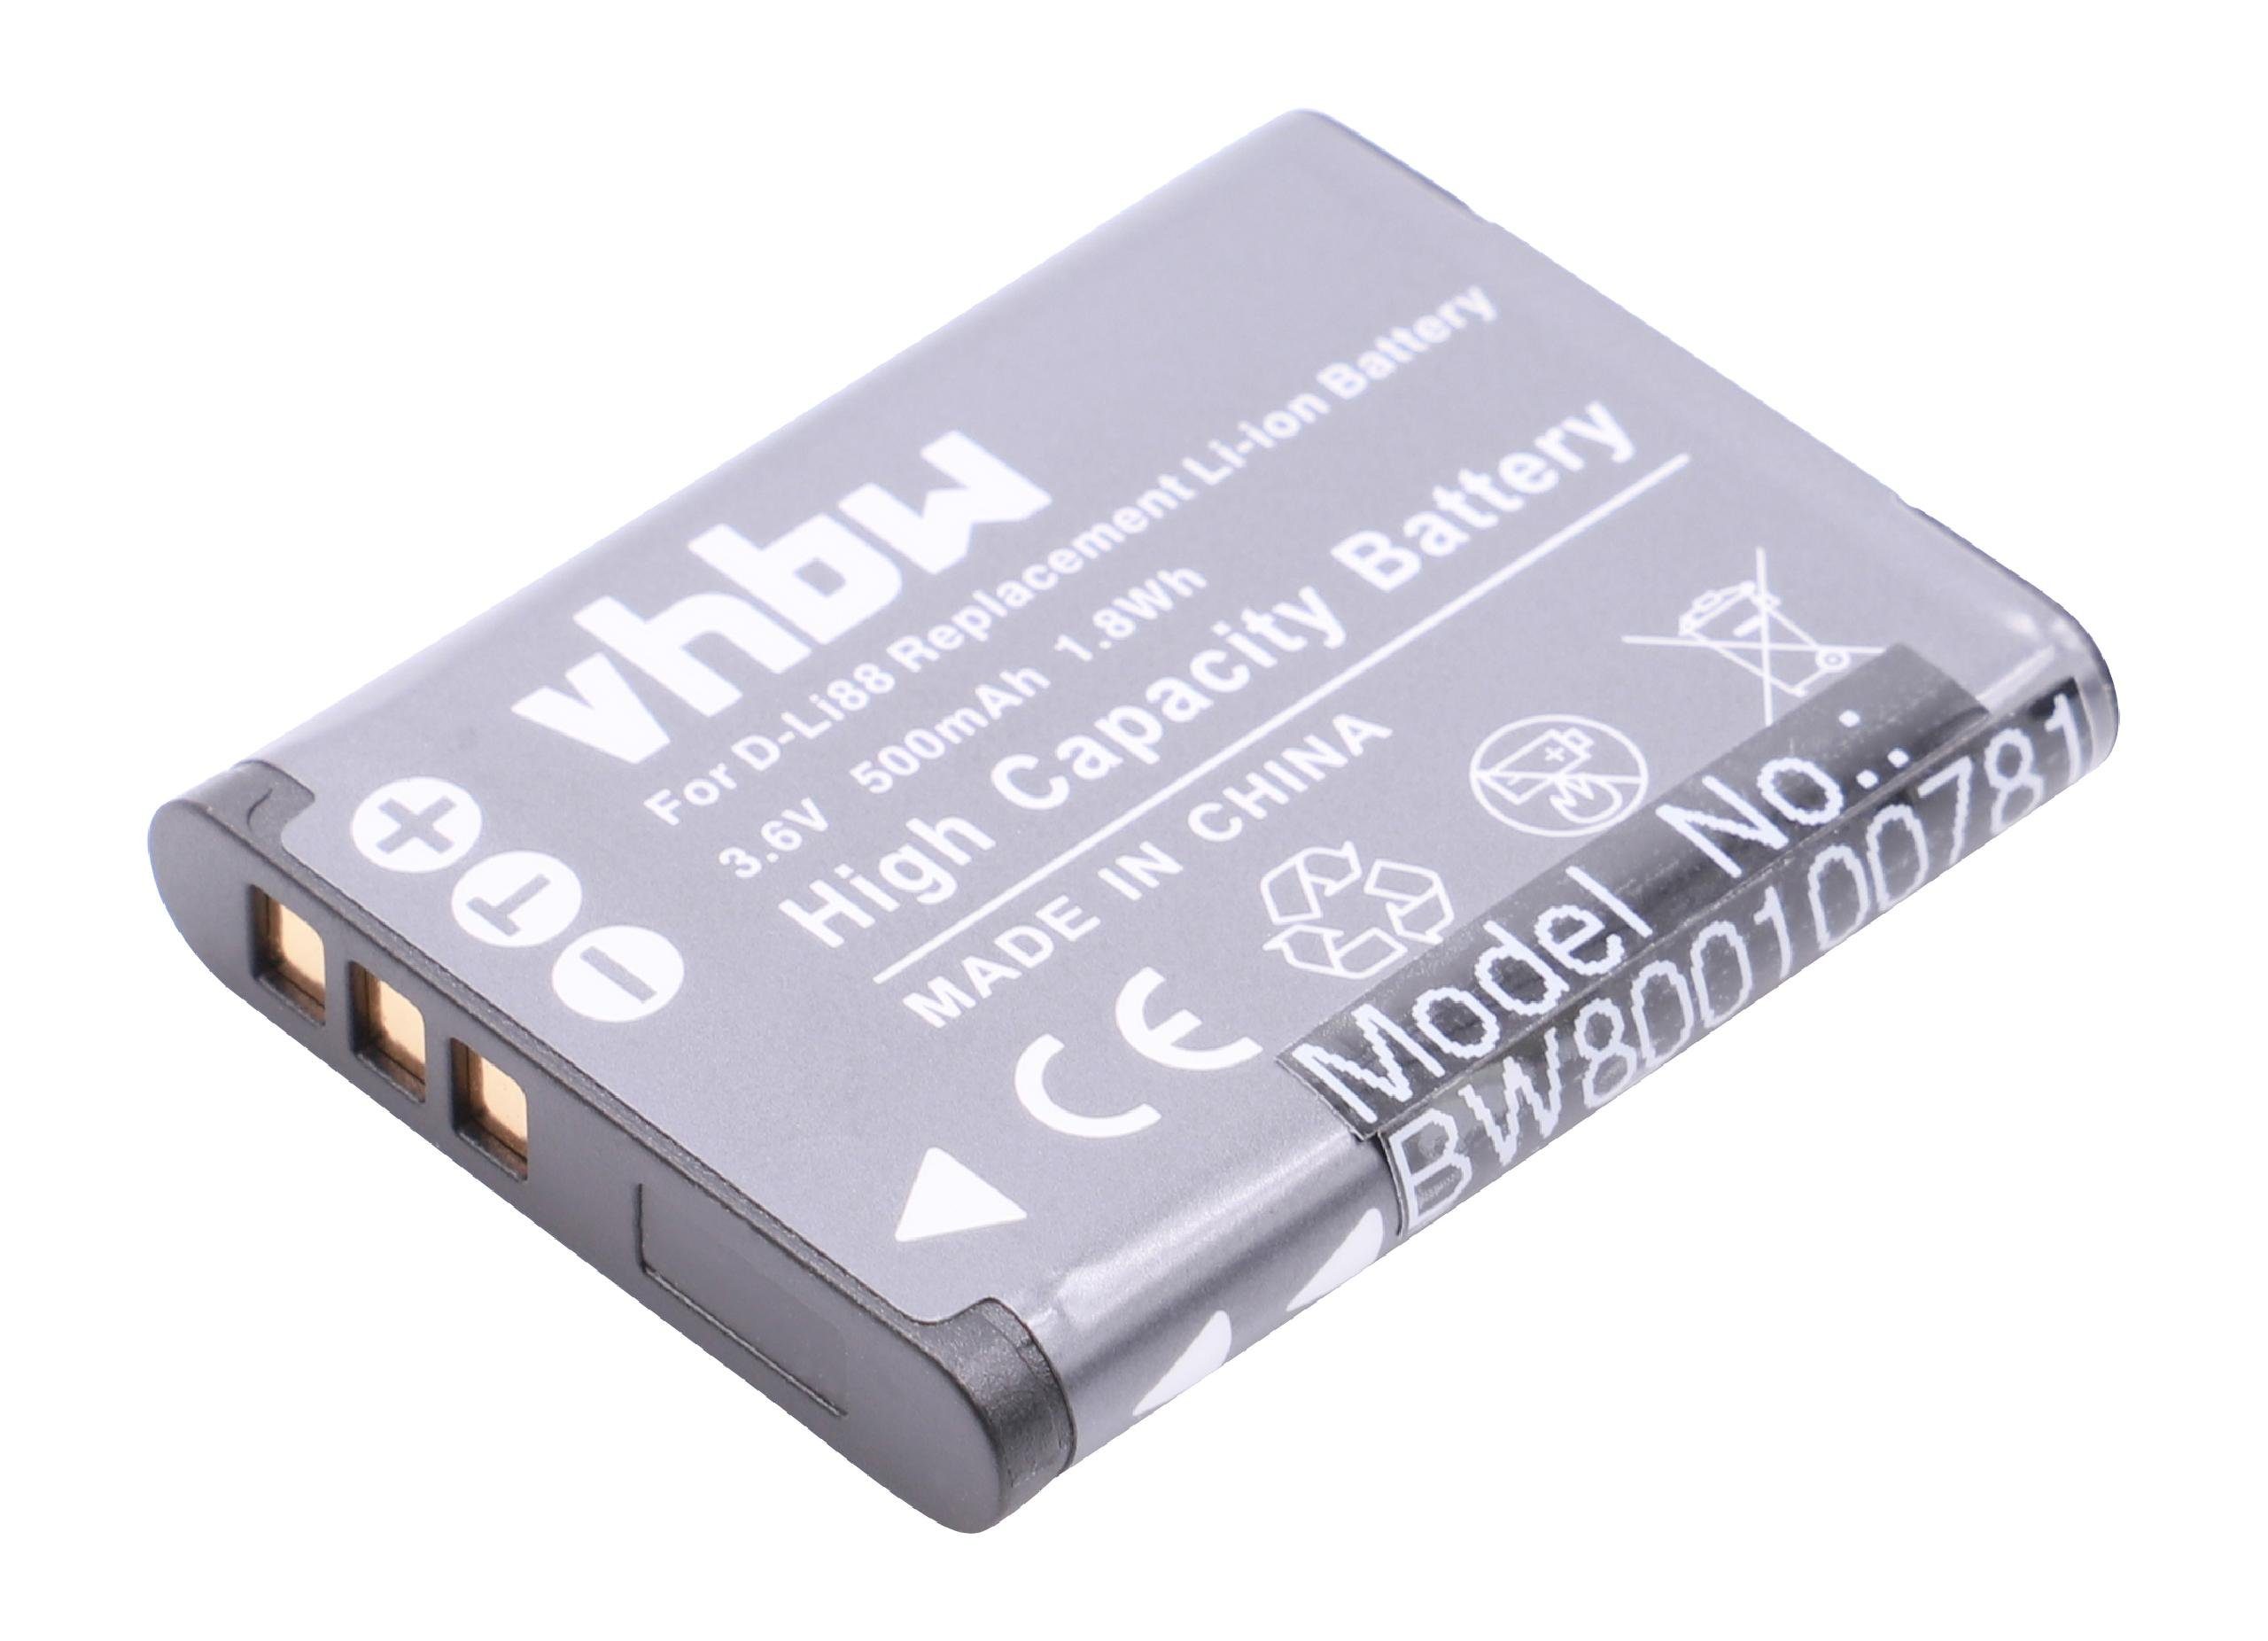 vhbw Kamera-Akku passend für Kompatibel mit Pentax Optio i90, H90, P70, P80, NB1000, RS1000, WS80, W90 Kamera / Foto Kompakt (500mAh, 3,6V, Li-Ion) 500 mAh